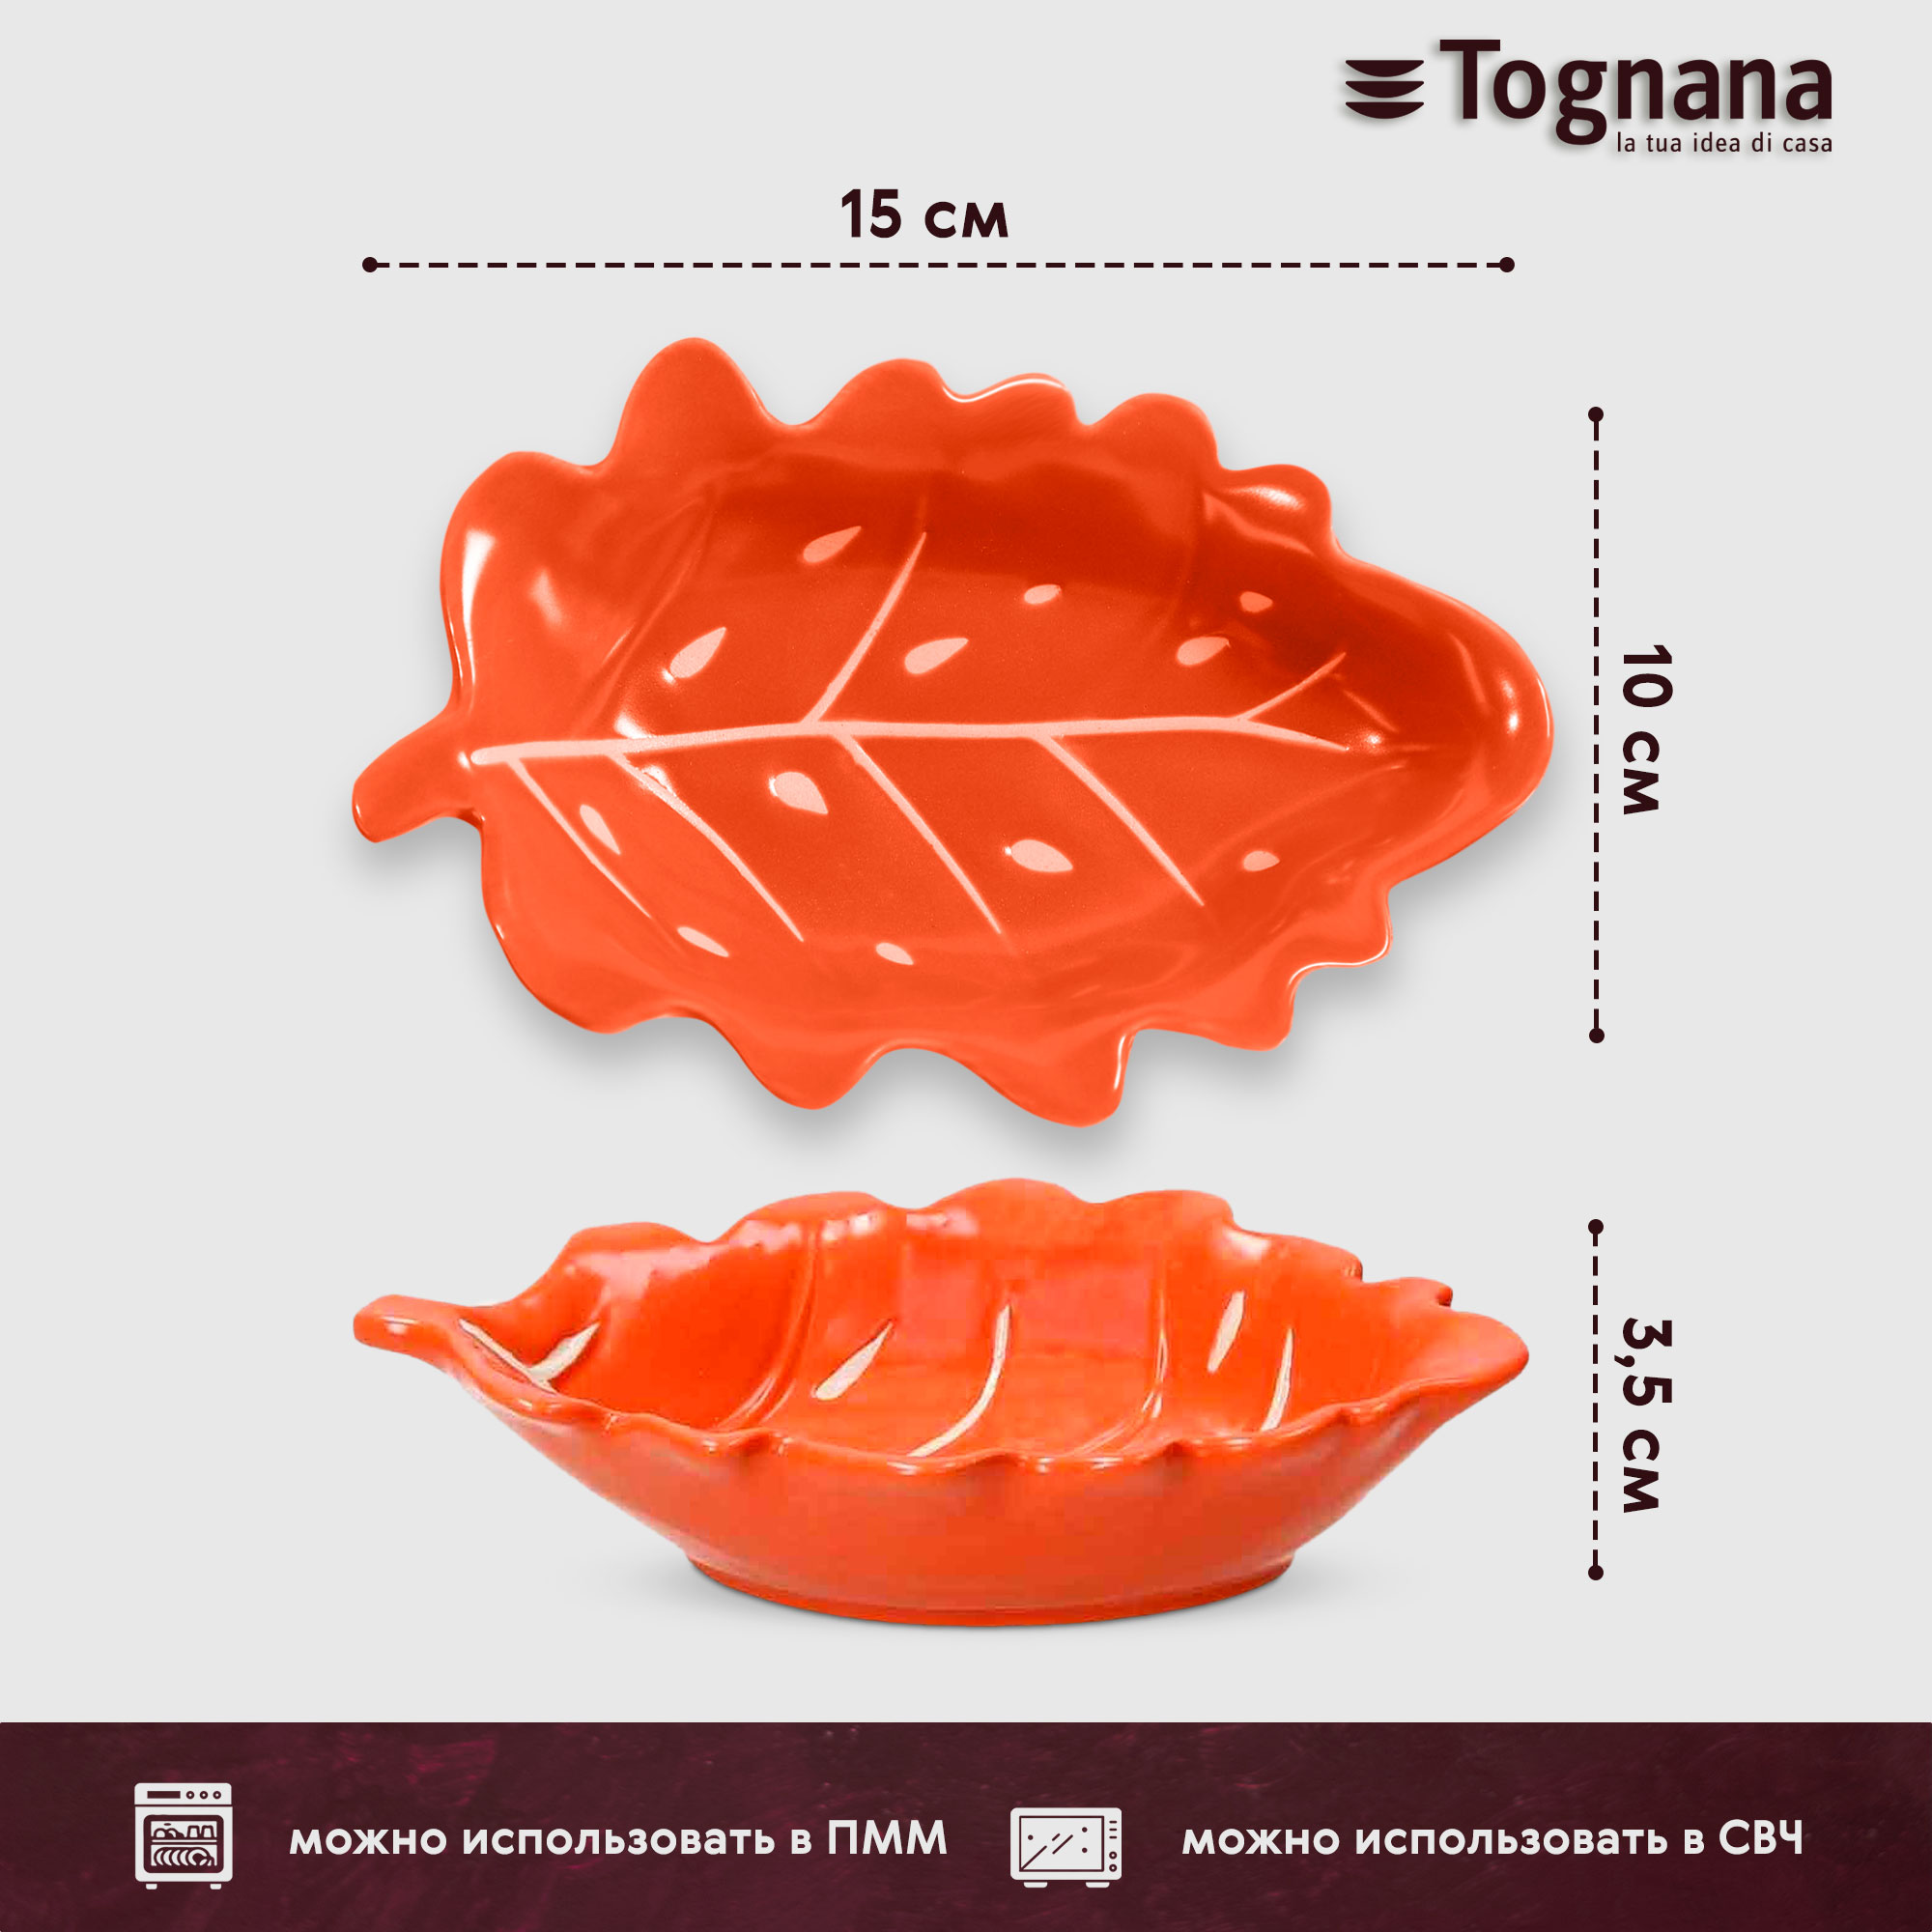 Блюдо Tognana Foglie оранжевое 15x10 см, цвет оранжевый - фото 3